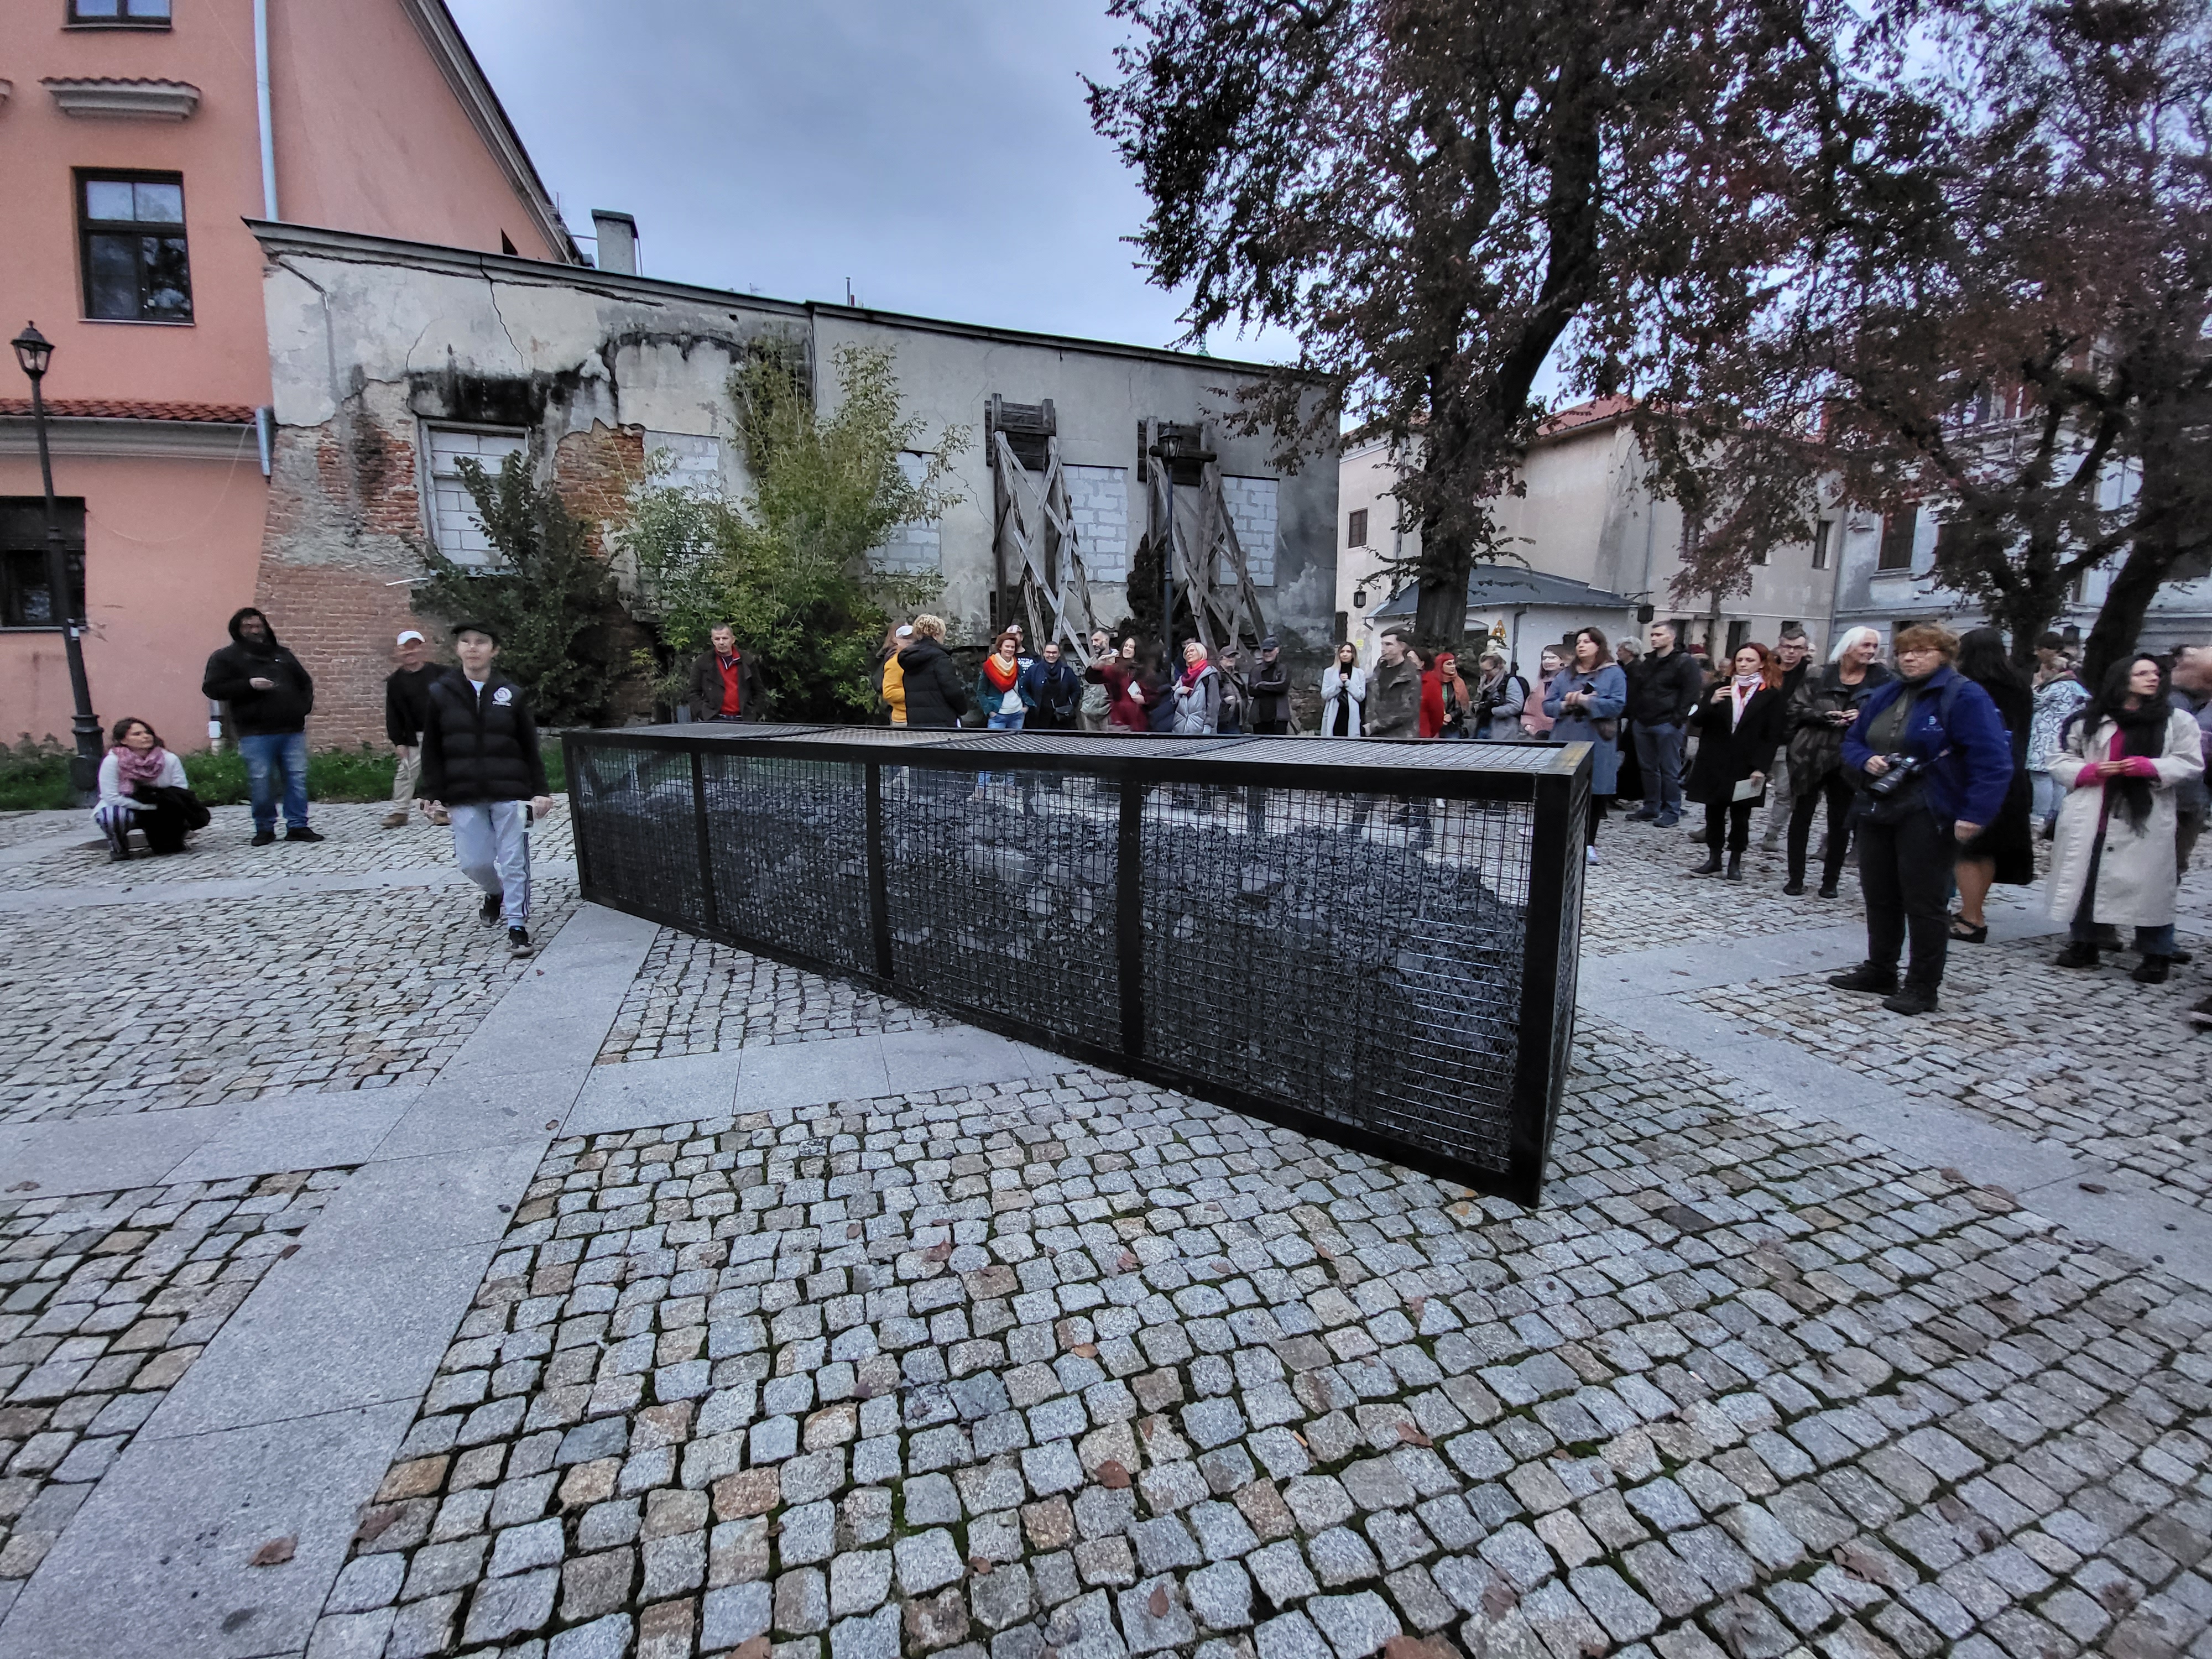 W Lublinie stanął Pomnik Węgla. Carbon Monument można oglądać na Placu Jerzego Giedroycia (zdjęcia)